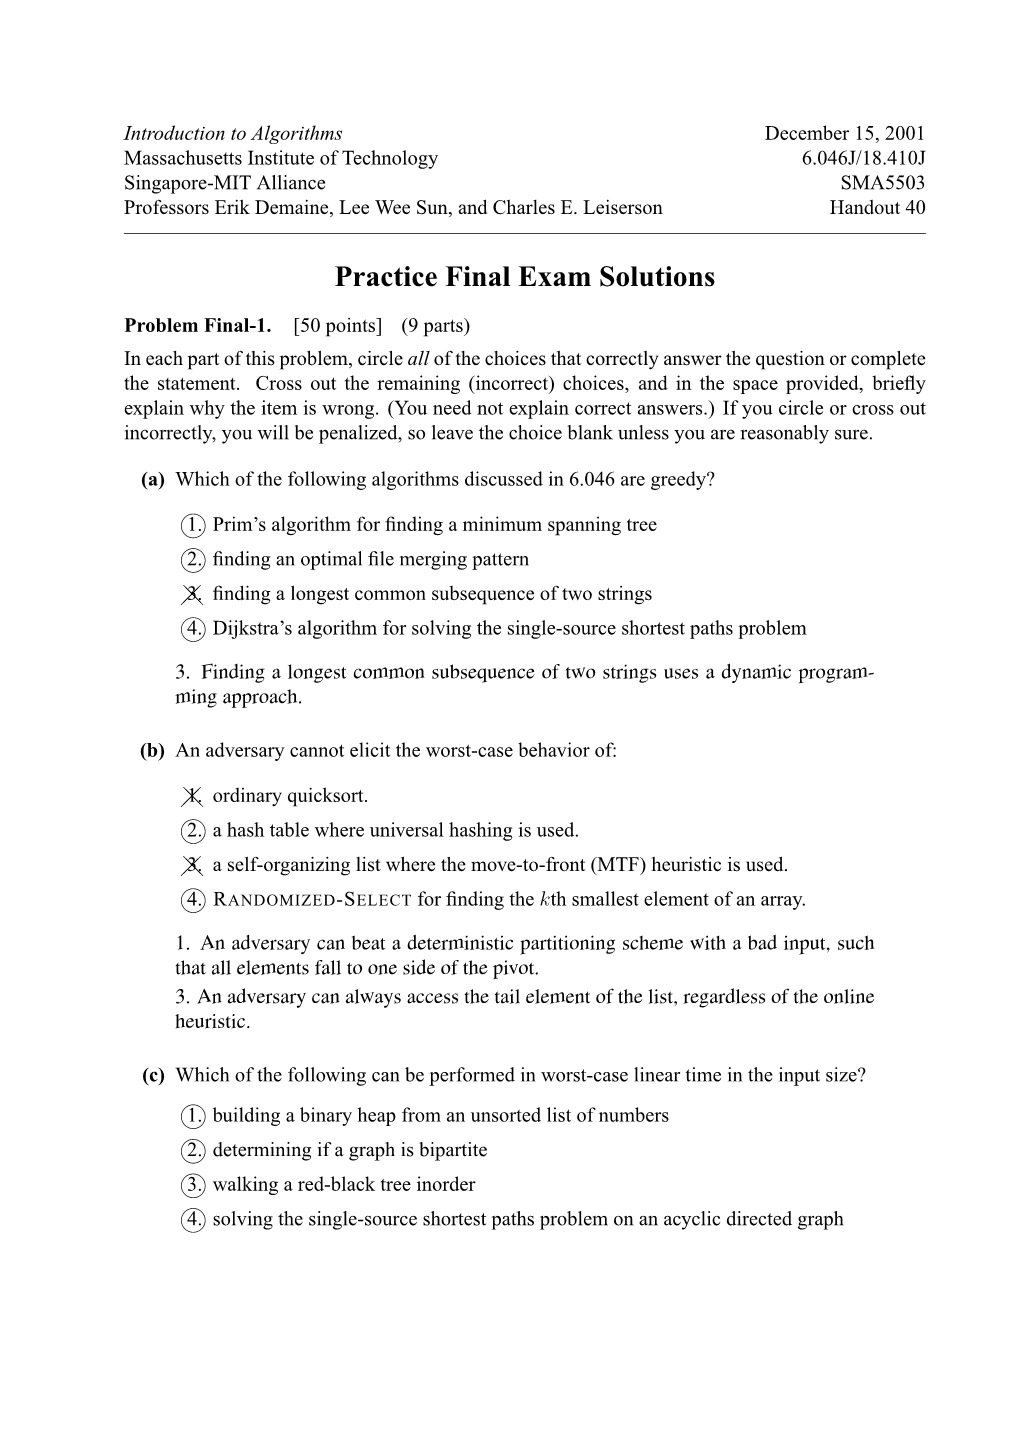 Practice Final Exam Solutions